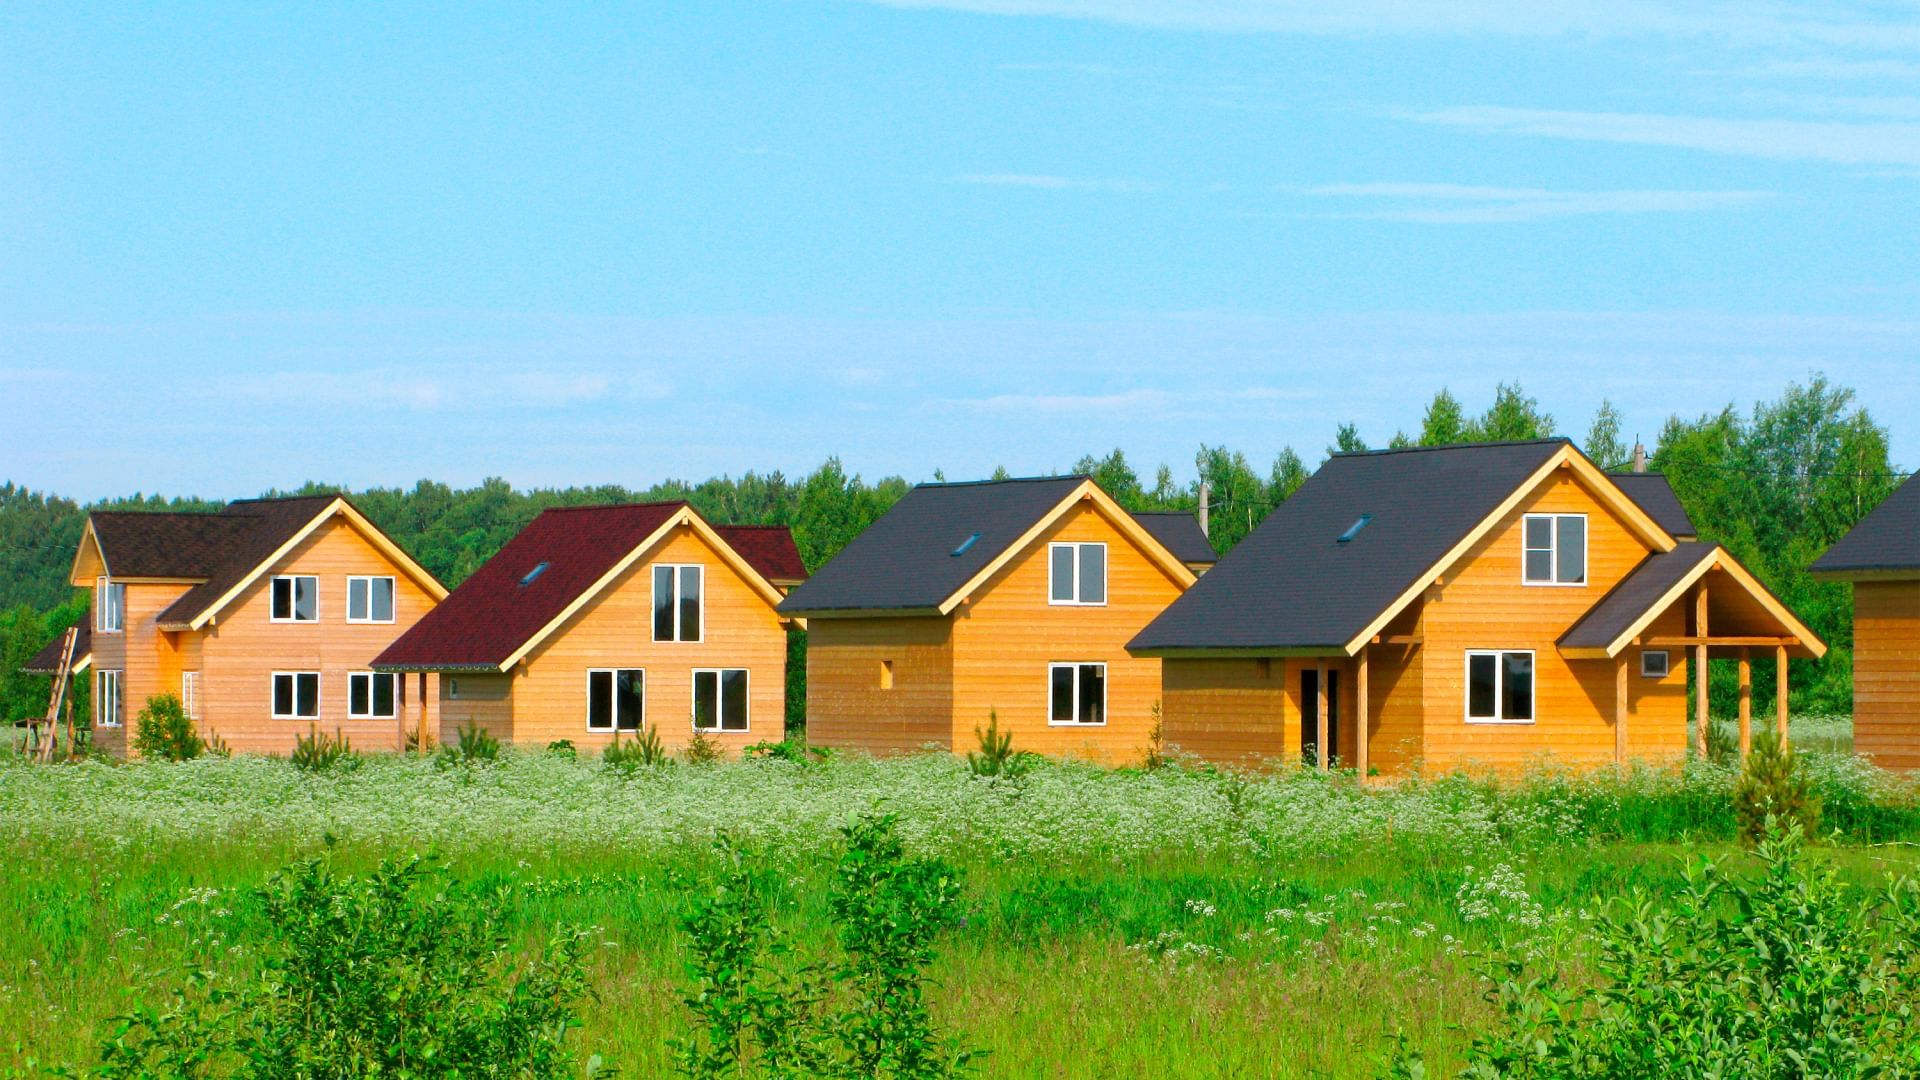 В России в прошлом году построили 15,6 млн кв. м деревянных домов, это рекордный показатель за всю историю сбора статистики — с 2009 года. Об этом свидетельствуют данные Росстата.